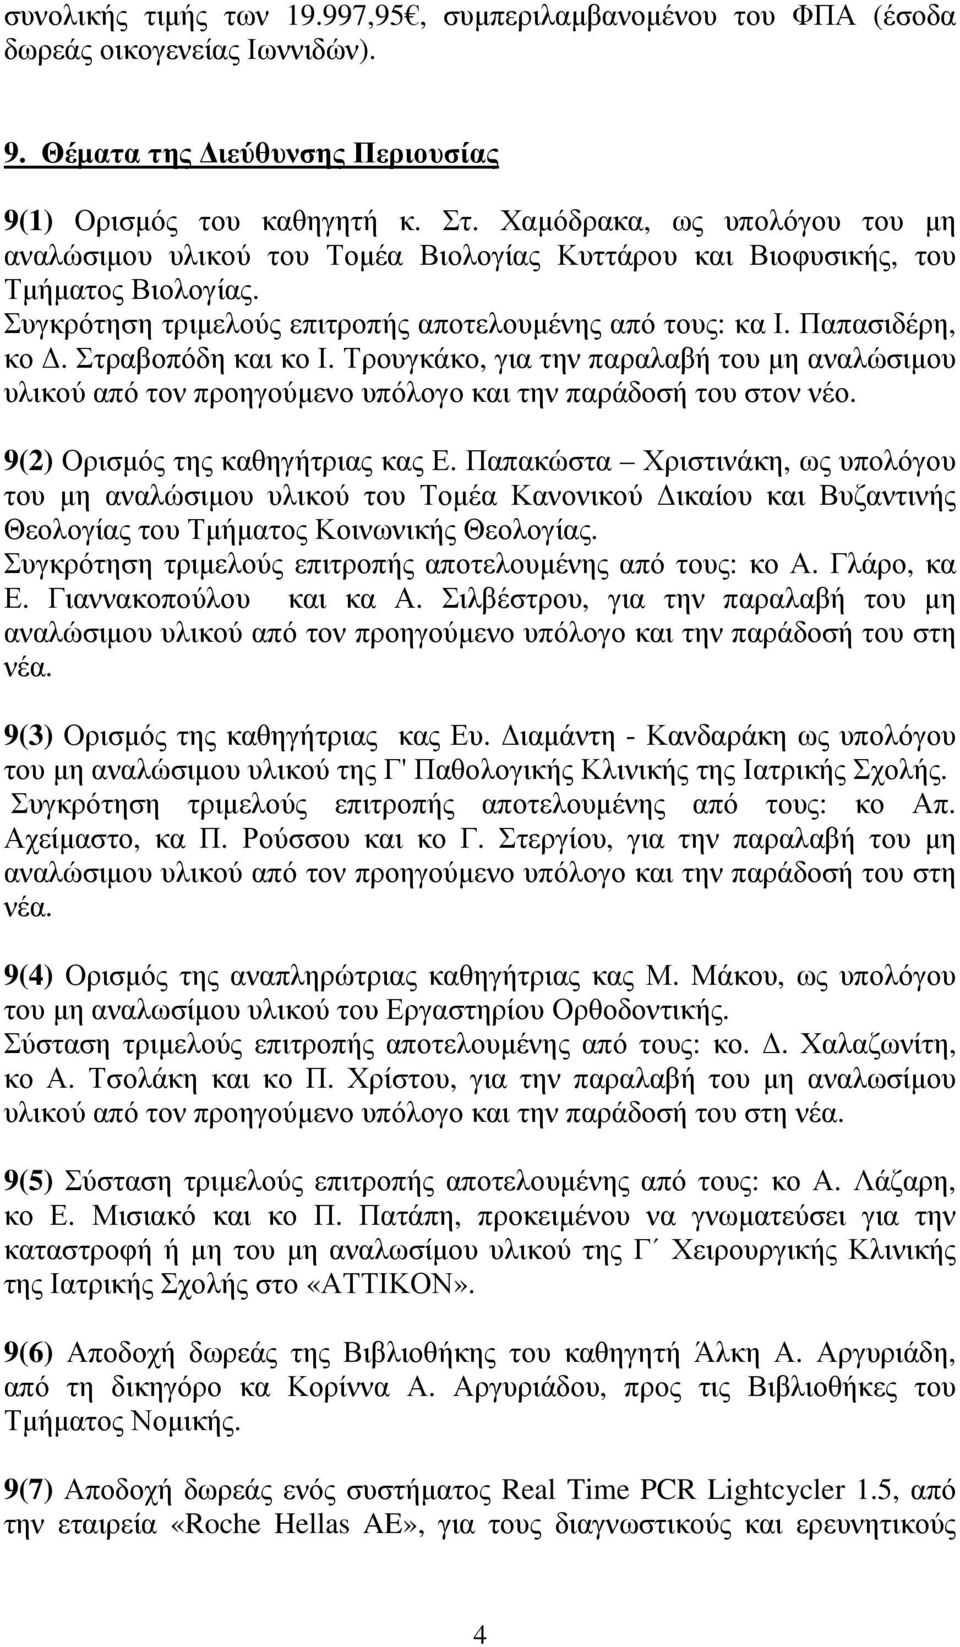 Στραβοπόδη και κο Ι. Τρουγκάκο, για την παραλαβή του µη αναλώσιµου υλικού από τον προηγούµενο υπόλογο και την παράδοσή του στον νέο. 9(2) Ορισµός της καθηγήτριας κας Ε.